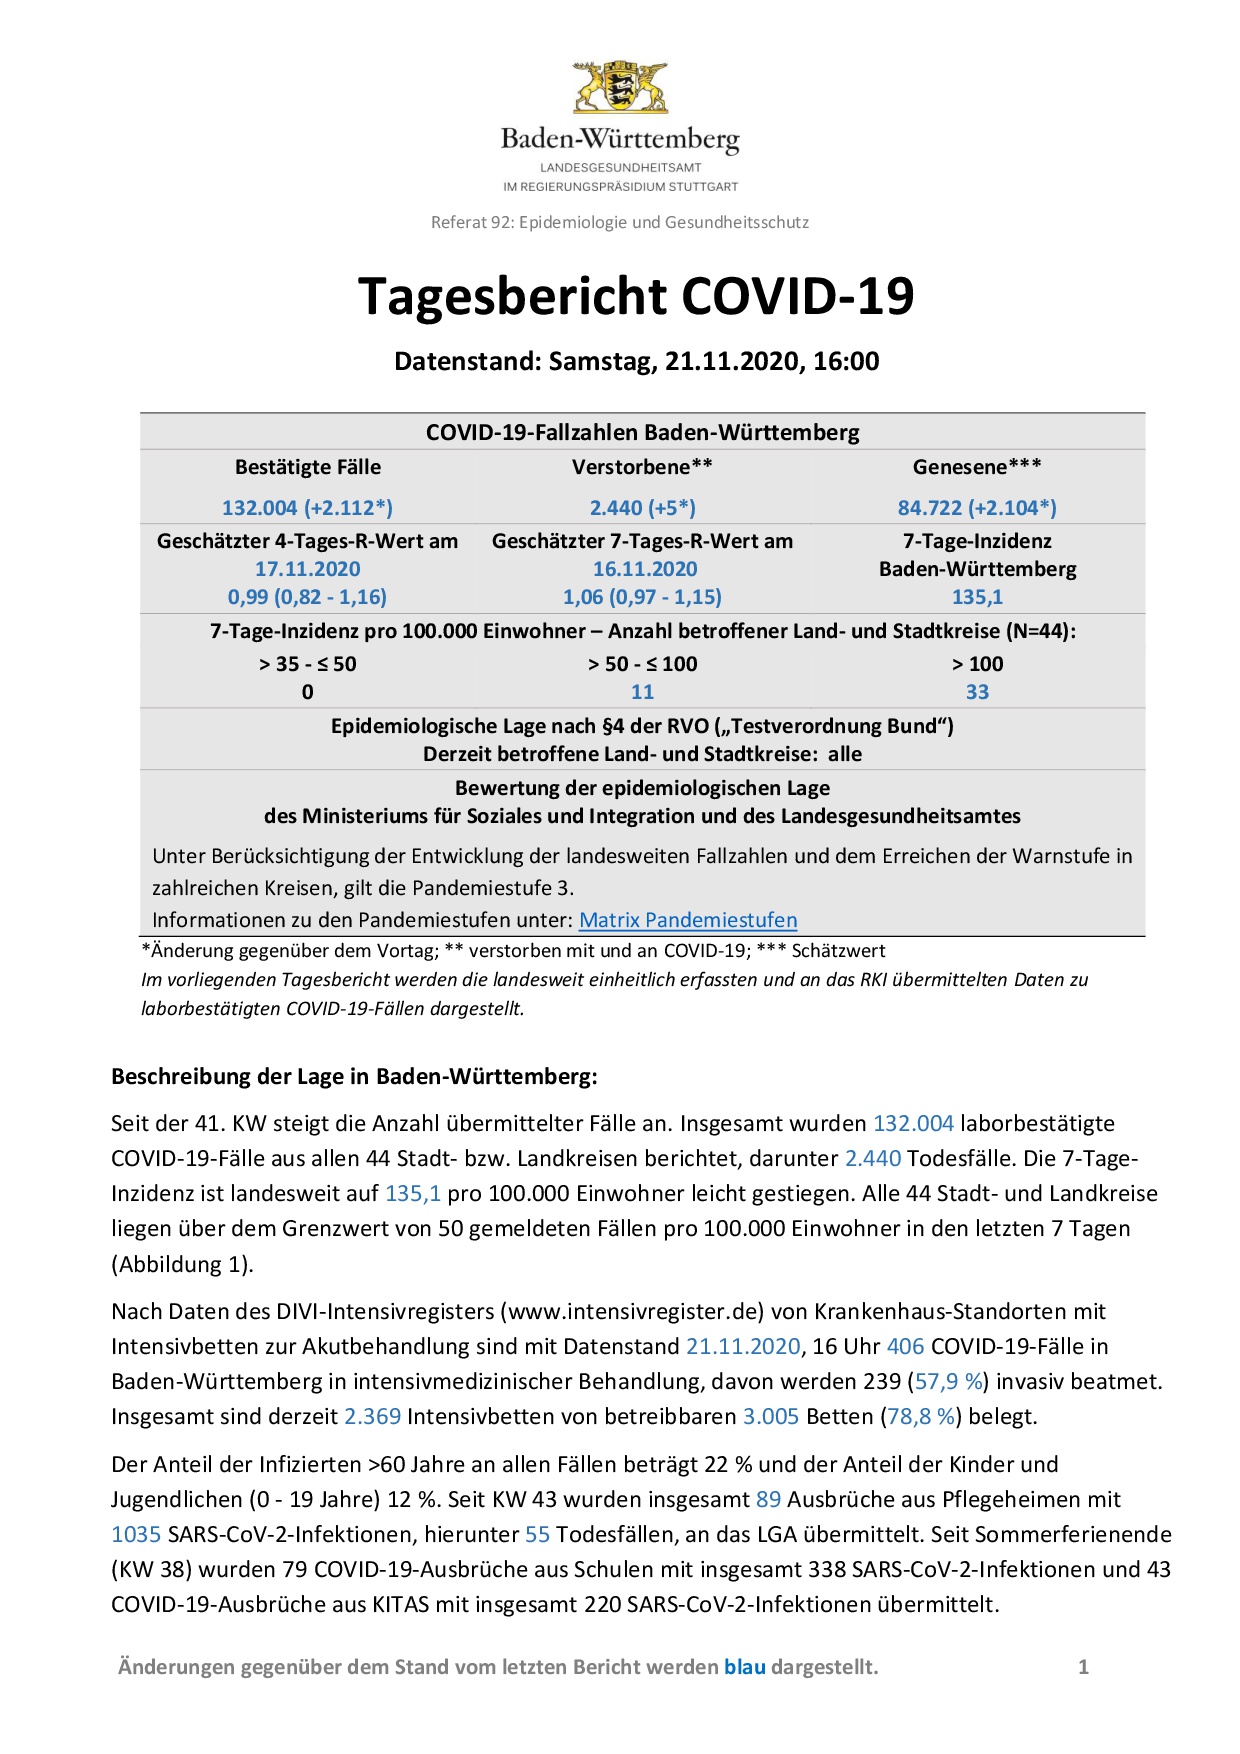 COVID-19 Tagesbericht (21.11.2020) des Landesgesundheitsamts Baden-Württemberg – (ausführlicher)